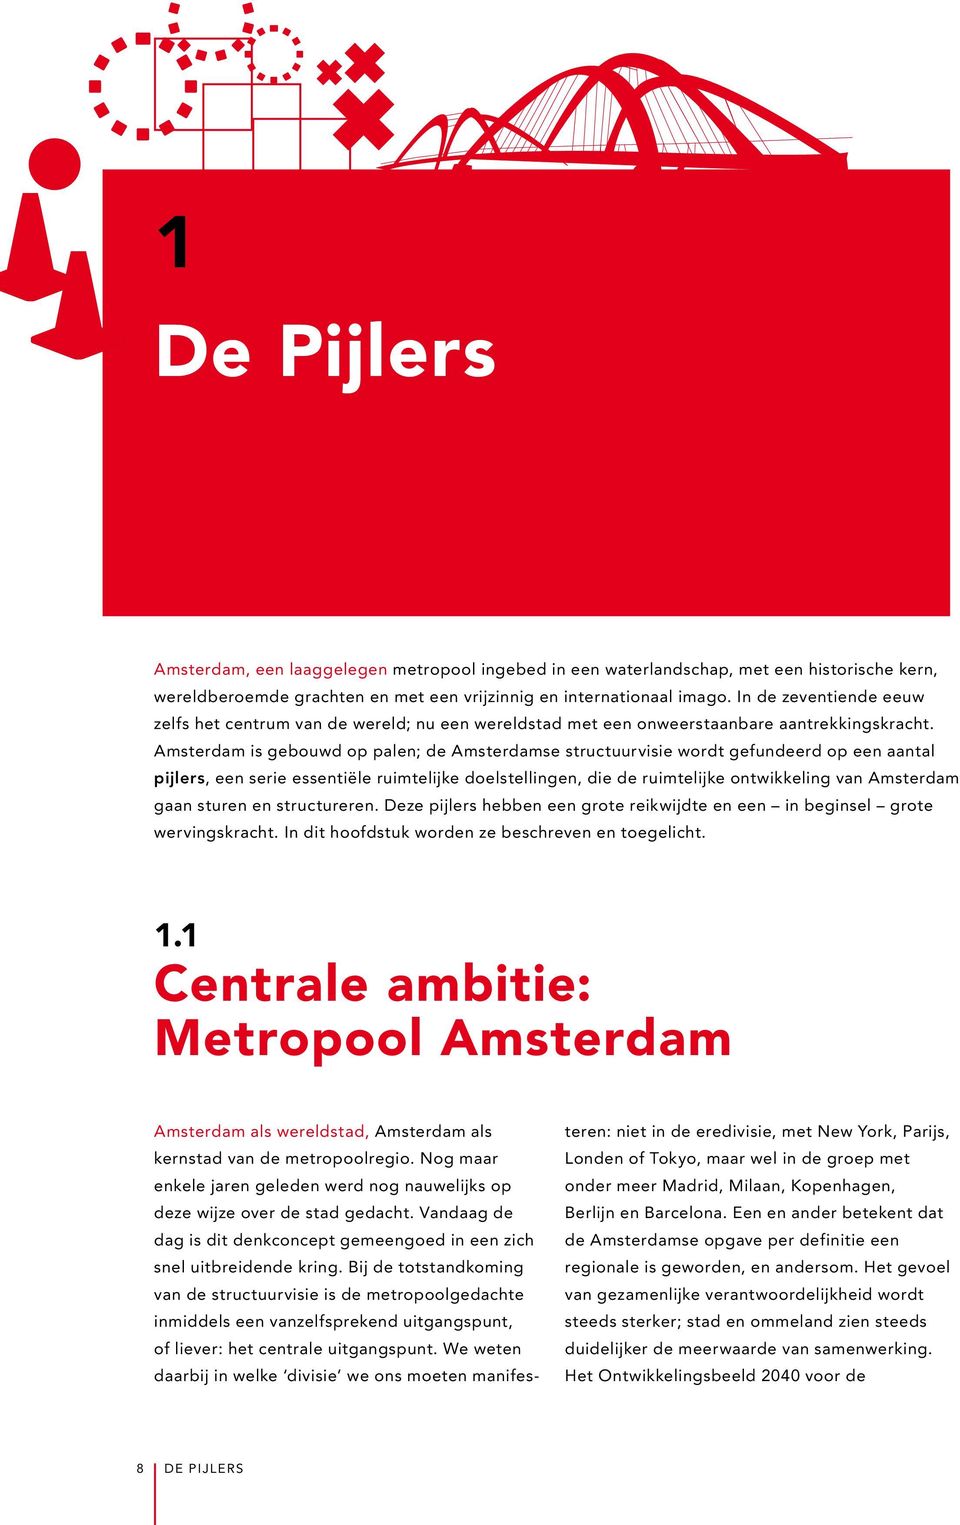 Amsterdam is gebouwd op palen; de Amsterdamse structuurvisie wordt gefundeerd op een aantal pijlers, een serie essentiële ruimtelijke doelstellingen, die de ruimtelijke ontwikkeling van Amsterdam